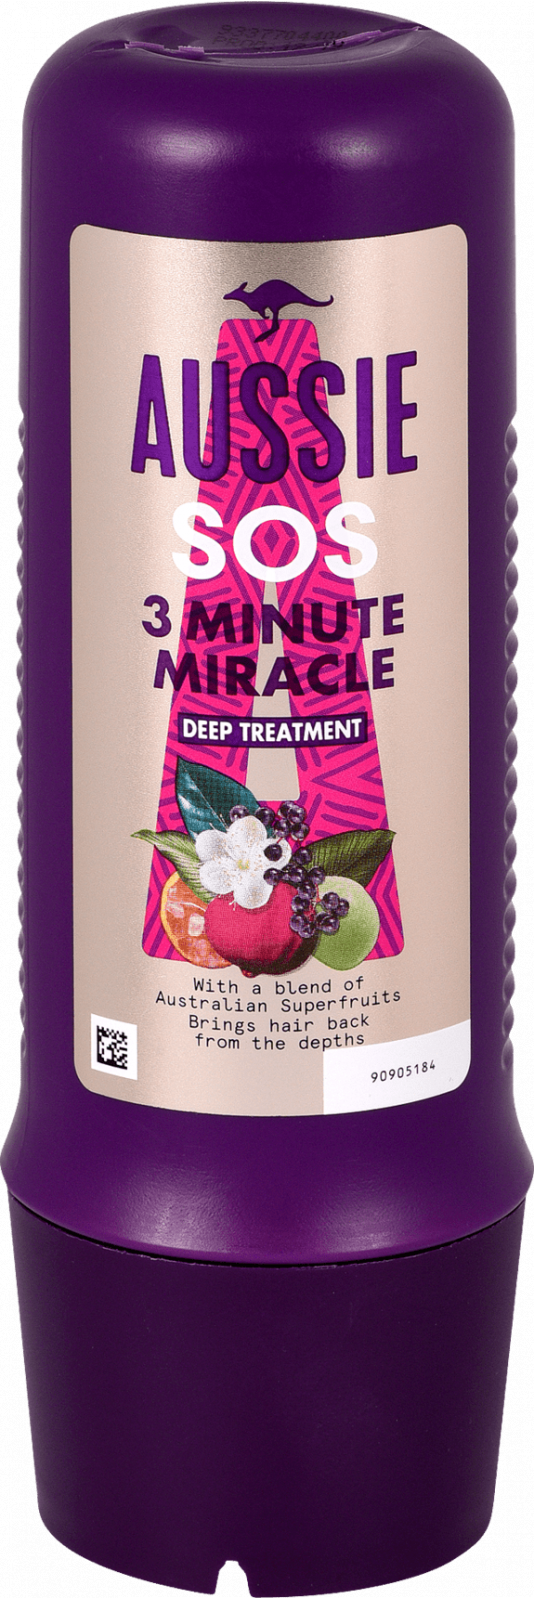 Aussie SOS Deep Repair 3 Minute Miracle Deep Treatment hair mask, 225 ml